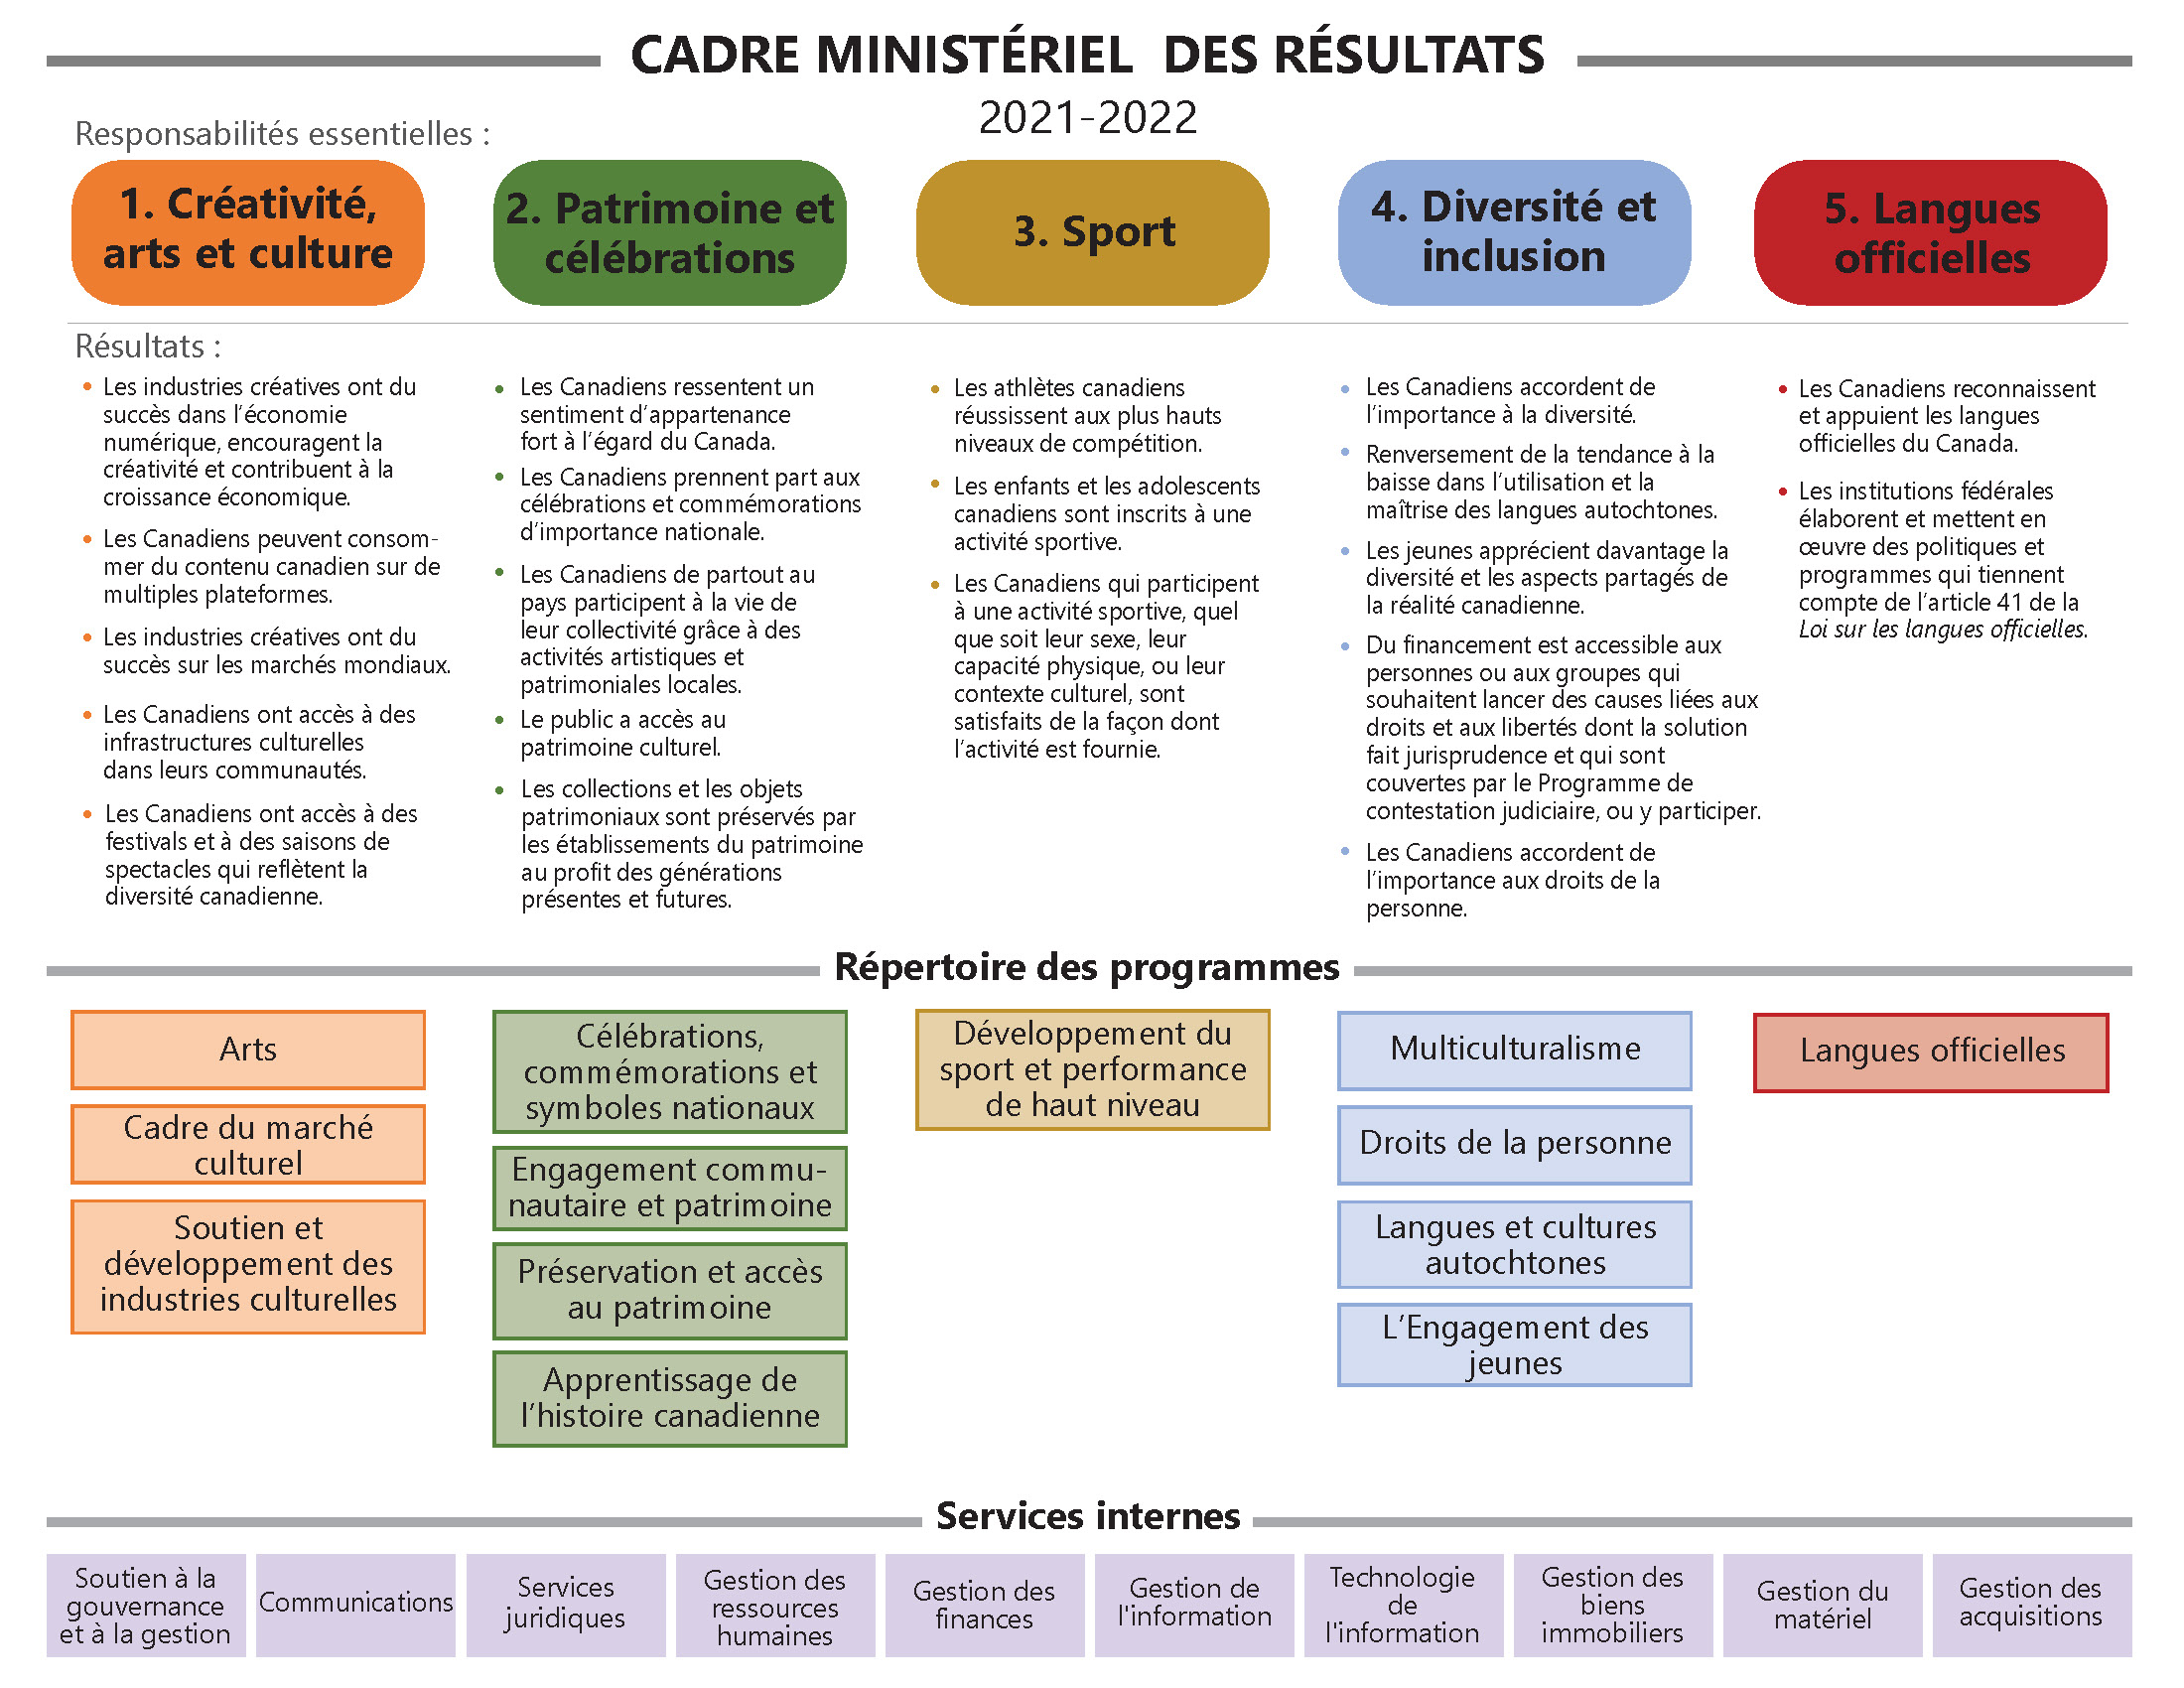 Cadre ministériel des résultats et le Répertoire des programmes officiels de Patrimoine canadien 2021-2022